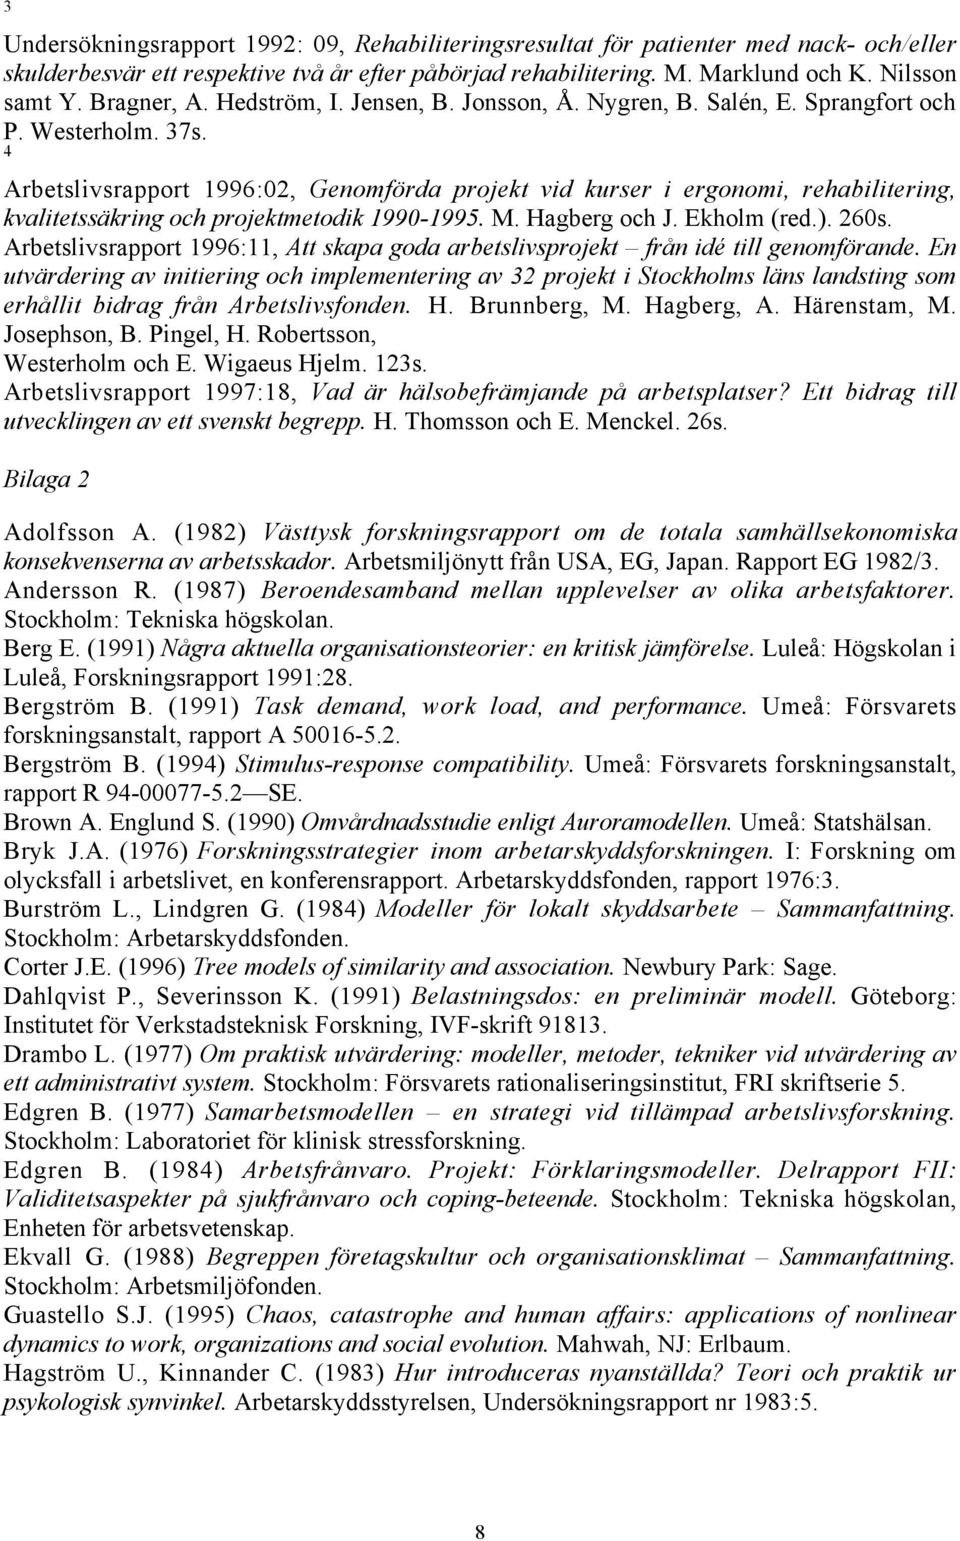 4 Arbetslivsrapport 1996:02, Genomfšrda projekt vid kurser i ergonomi, rehabilitering, kvalitetssškring och projektmetodik 1990-1995. M. Hagberg och J. Ekholm (red.). 260s.